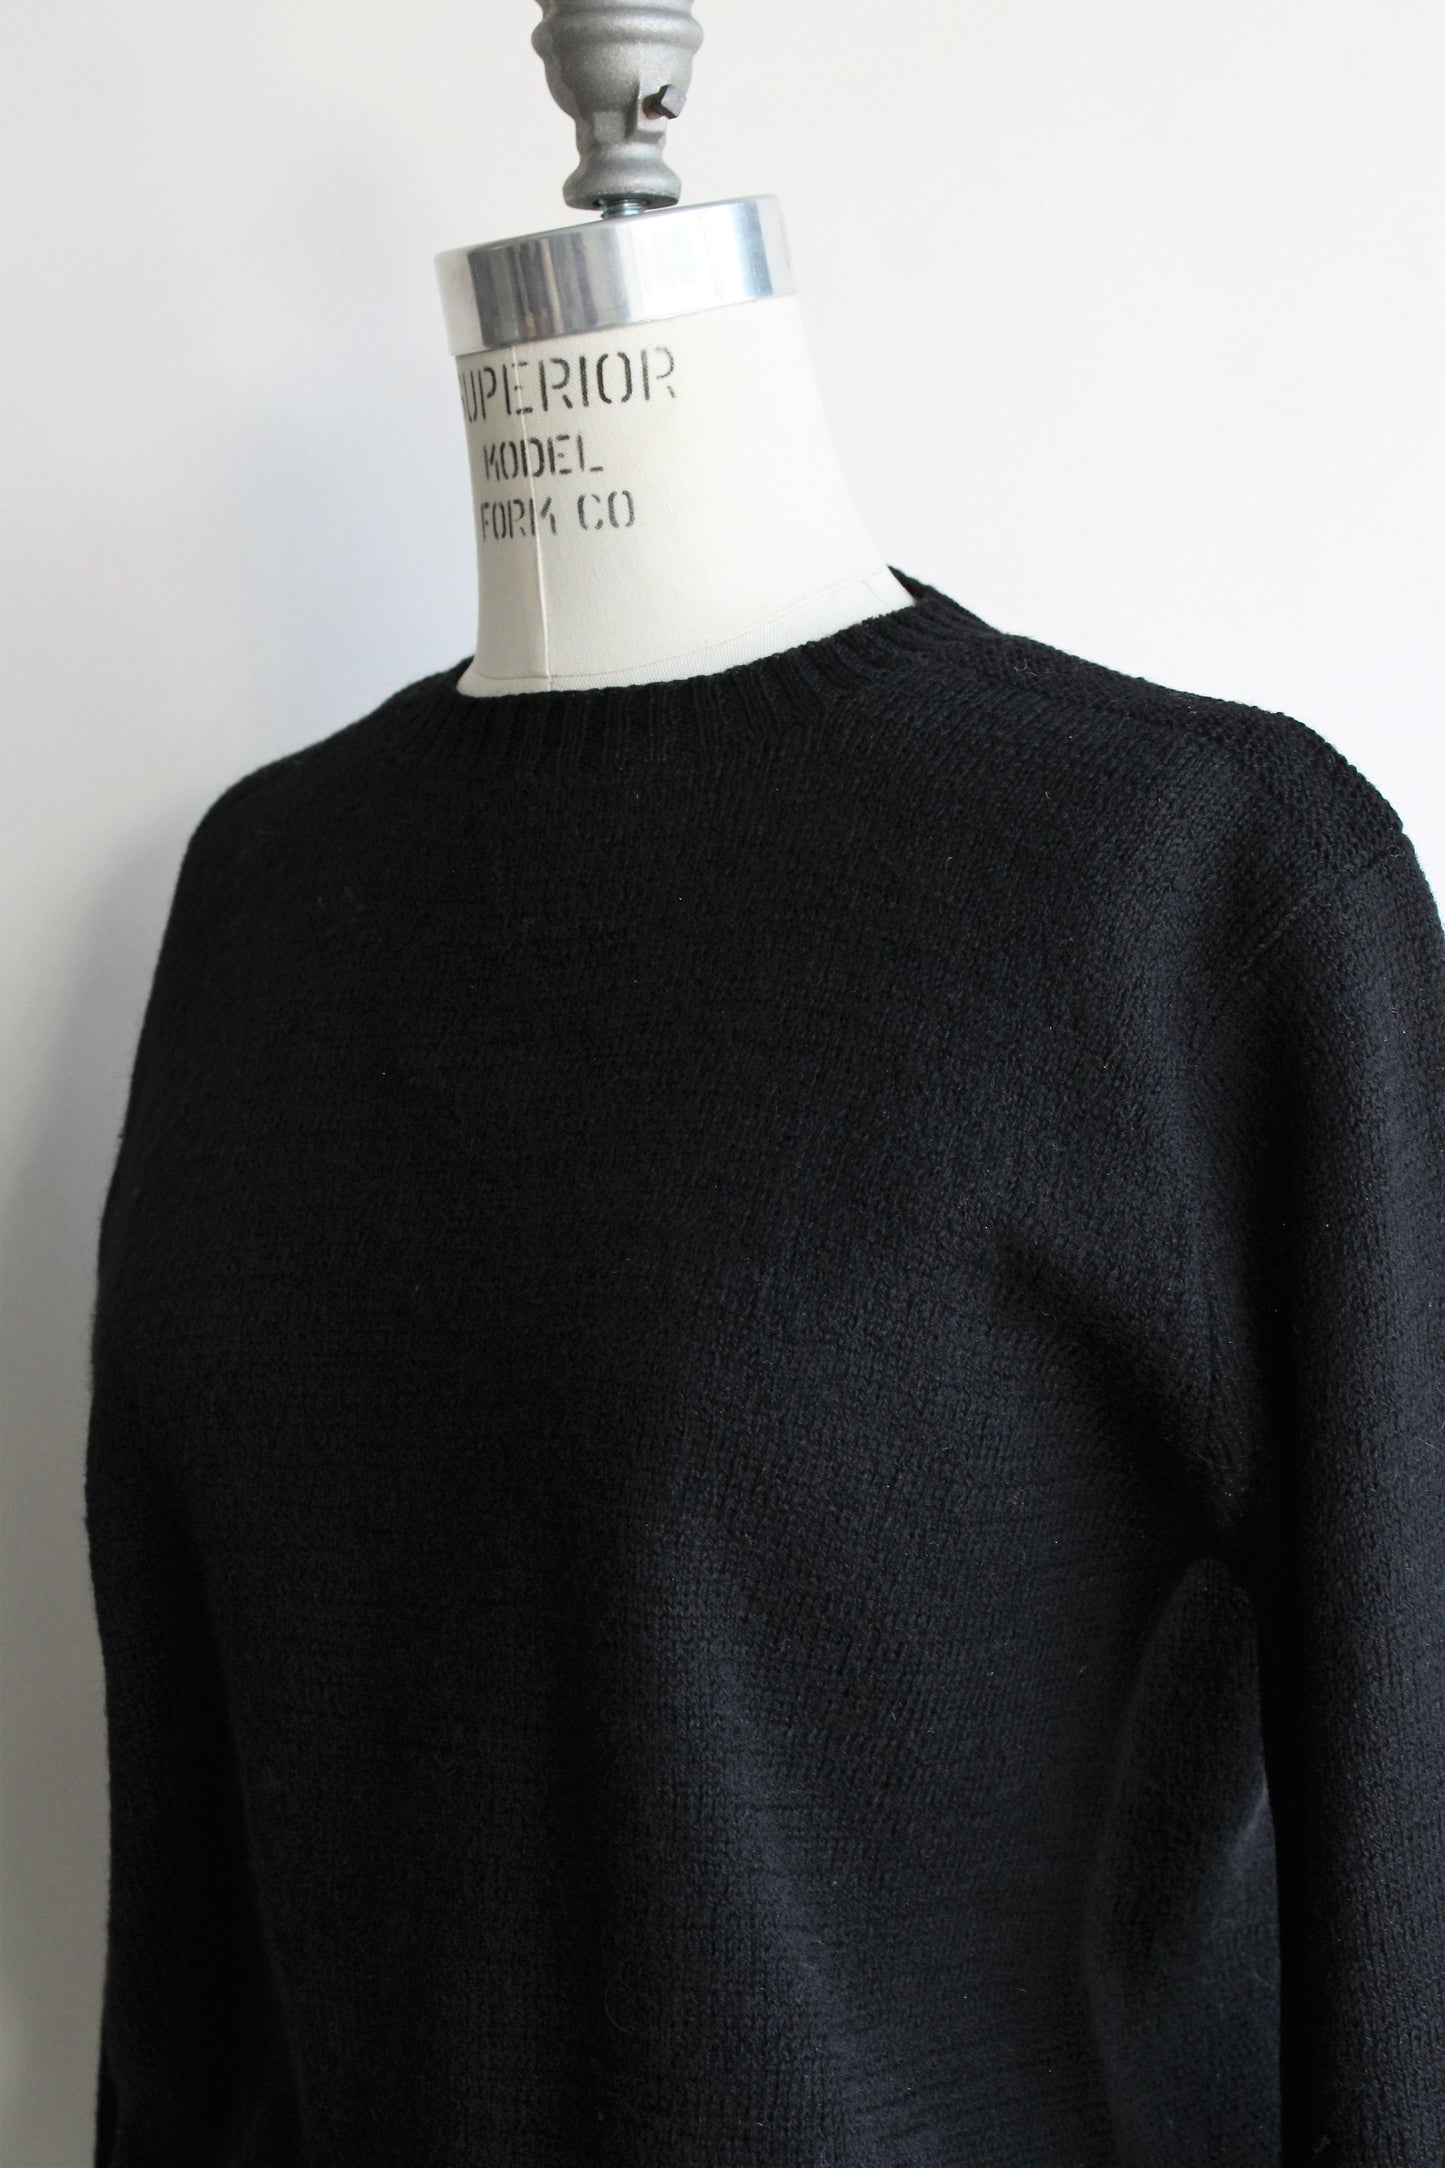 Vintage 1950s Alberic Original Wool Sweater